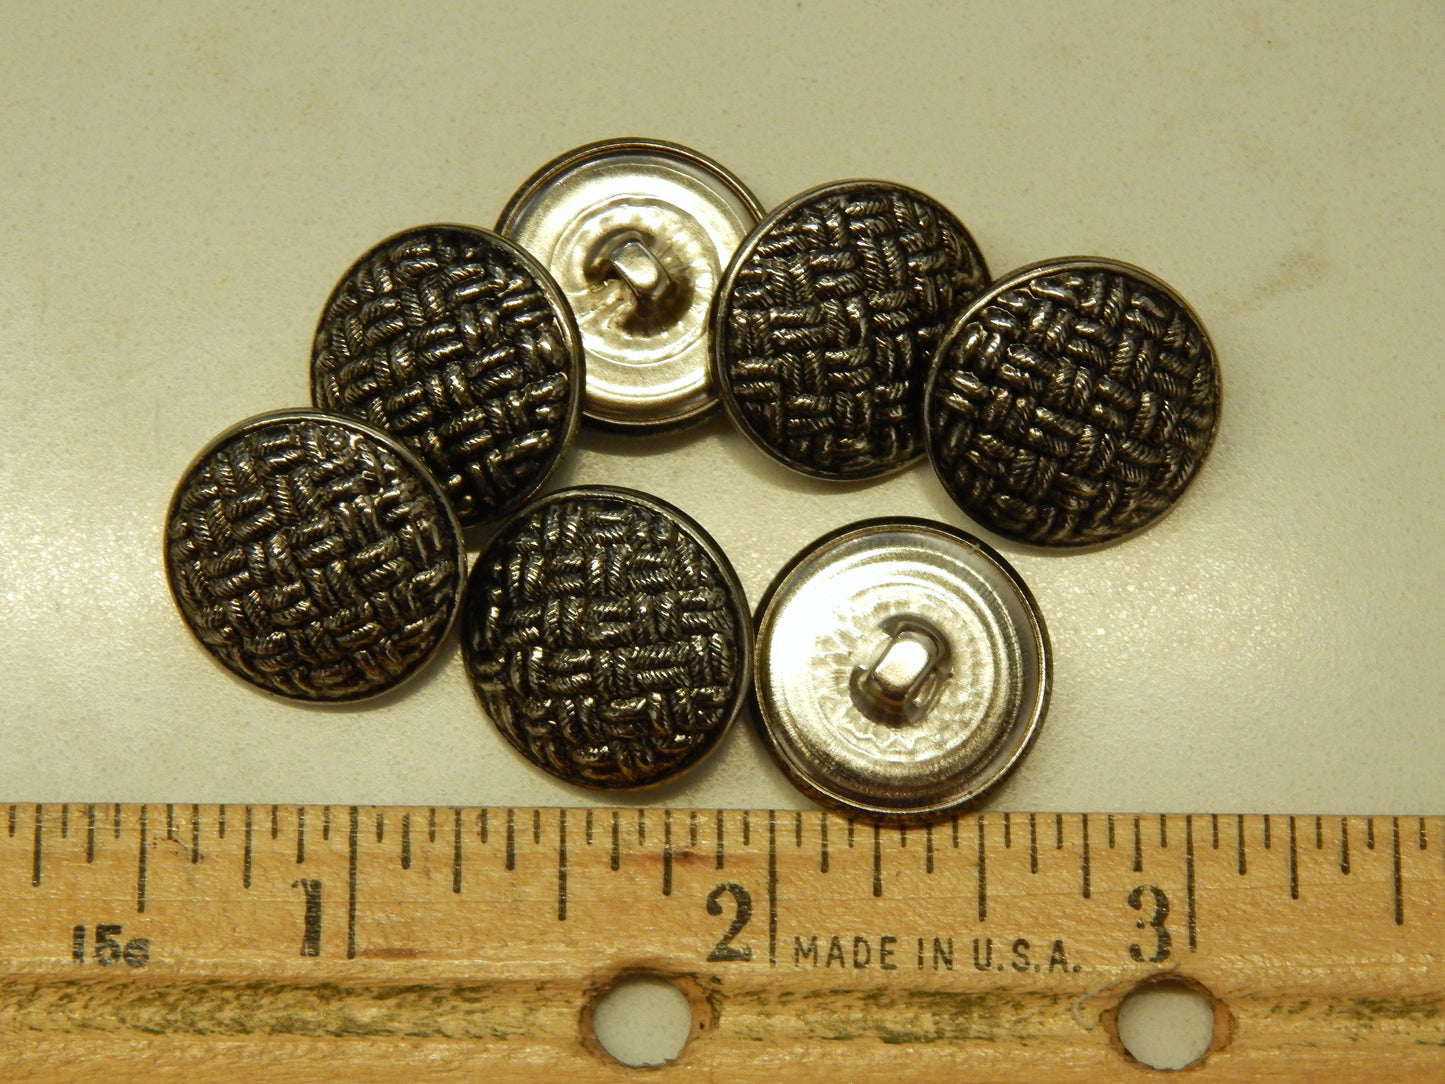 Dark Silver Basket Weave Buttons